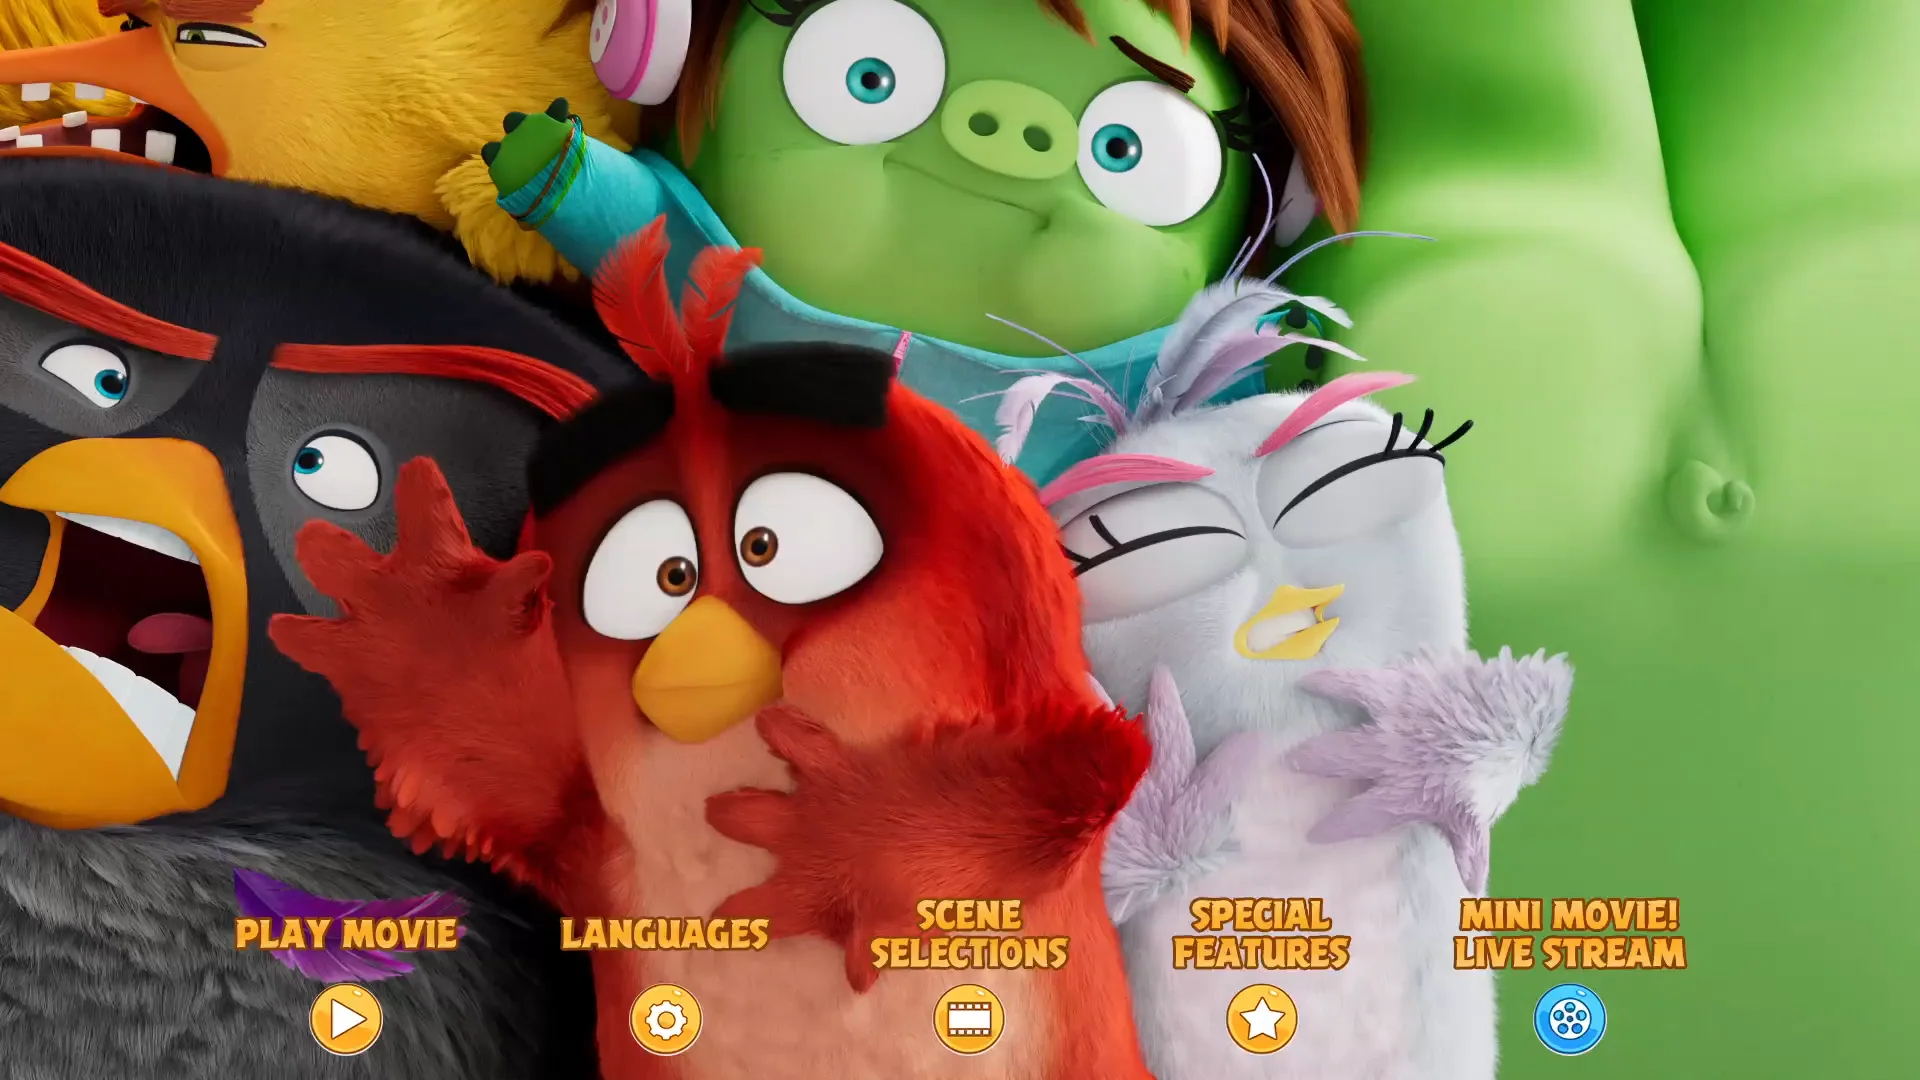 Angry Birds 2 - BD/DVD Menus on Vimeo